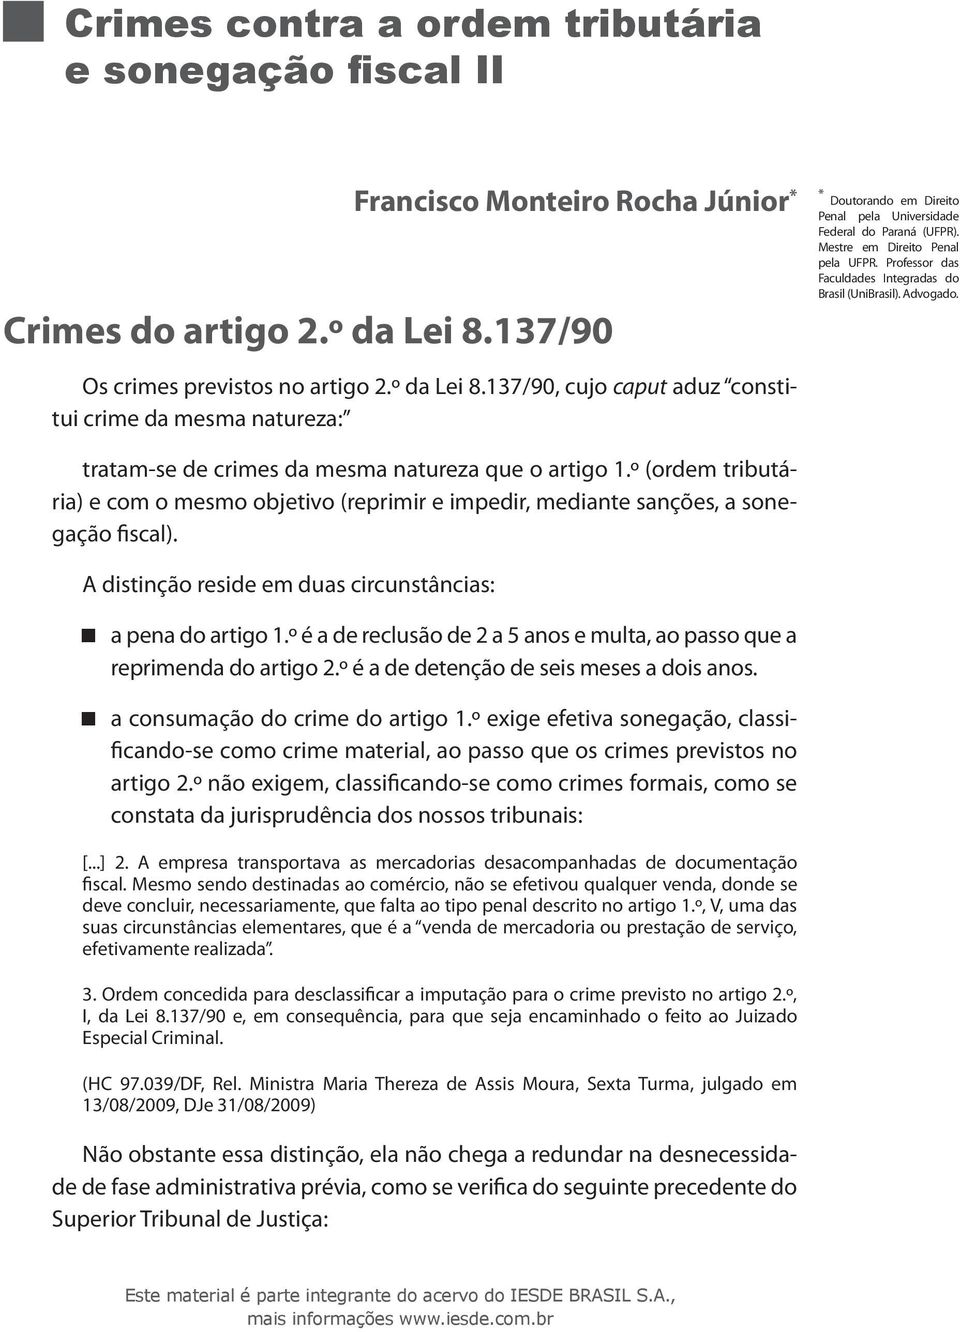 Mestre em Direito Penal pela UFPR. Professor das Faculdades Integradas do Brasil (UniBrasil). Advogado. tratam-se de crimes da mesma natureza que o artigo 1.